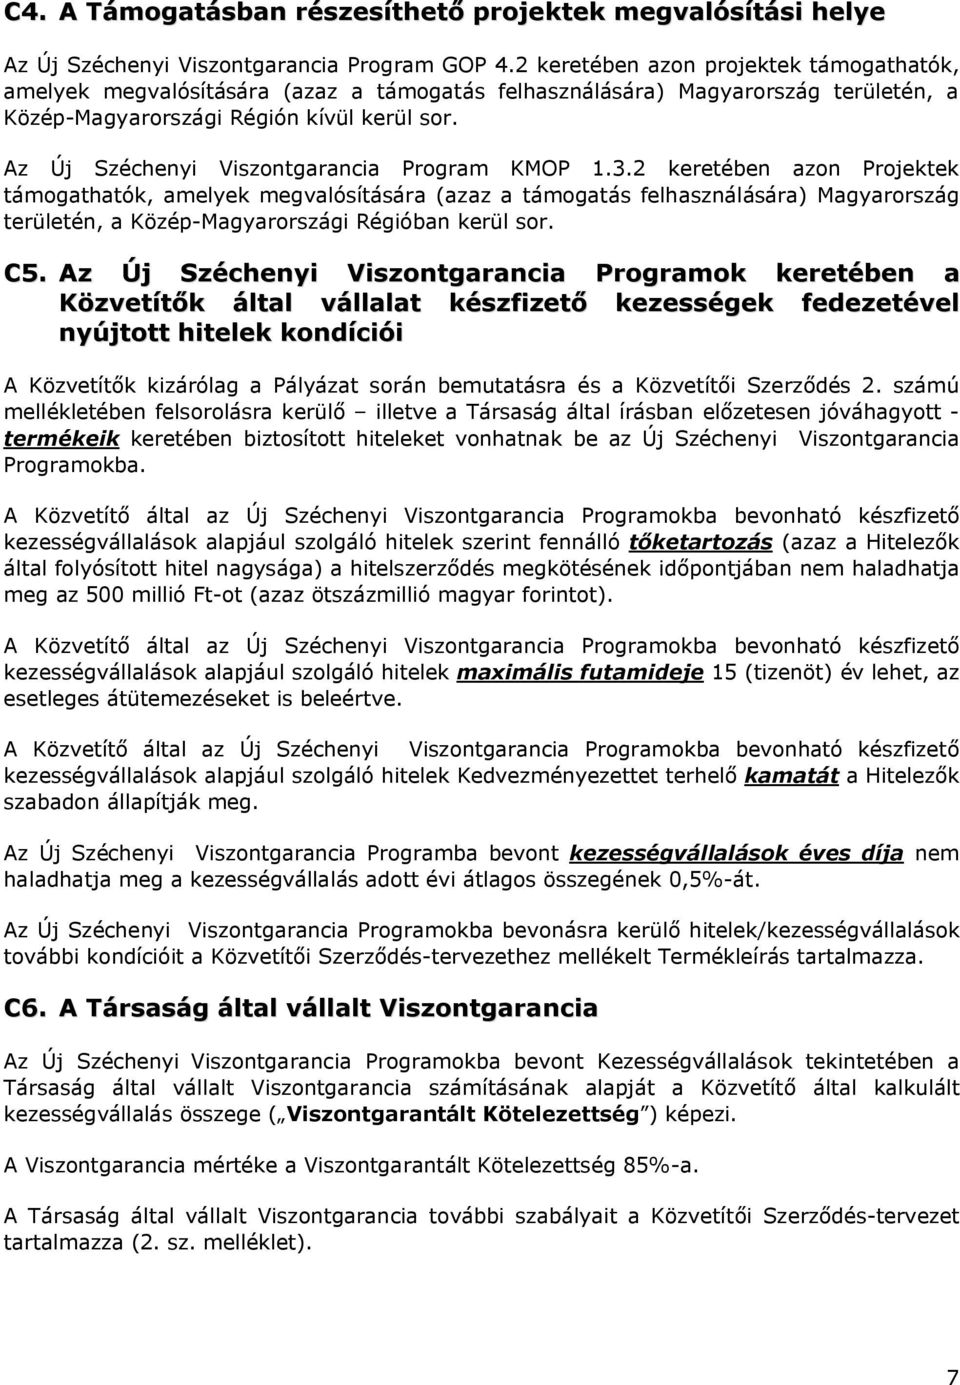 Az Új Széchenyi Viszontgarancia Program KMOP 1.3.